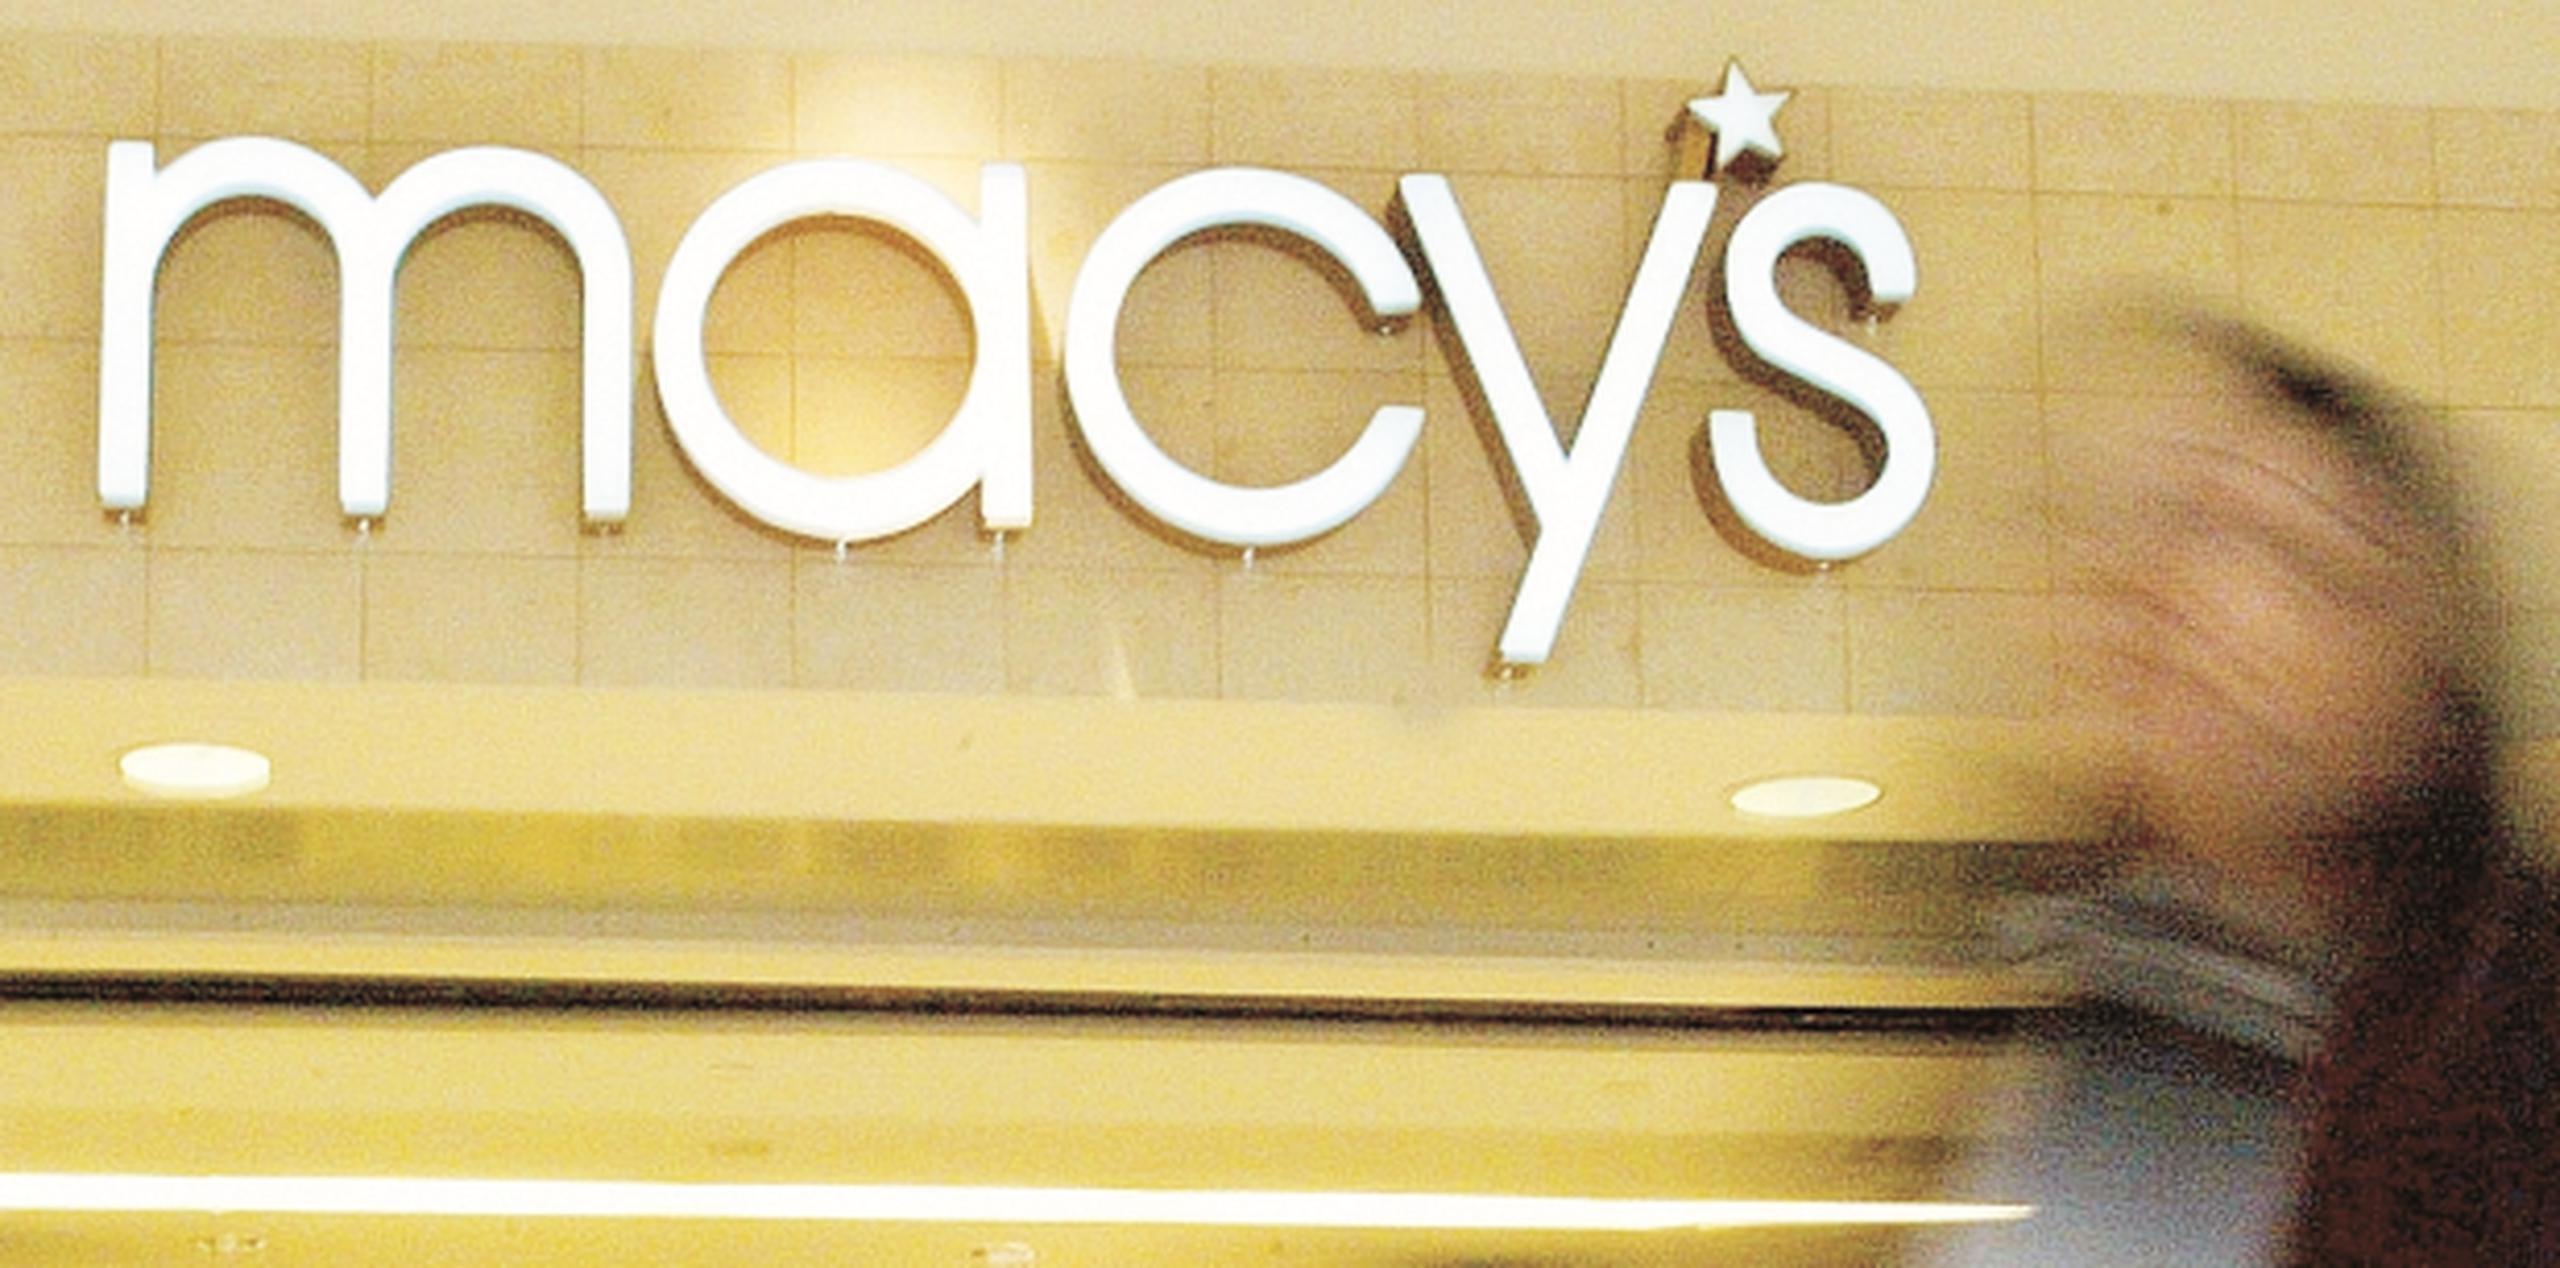 Macy's anunció el jueves pasado la clausura de 100 tiendas. (Archivo)